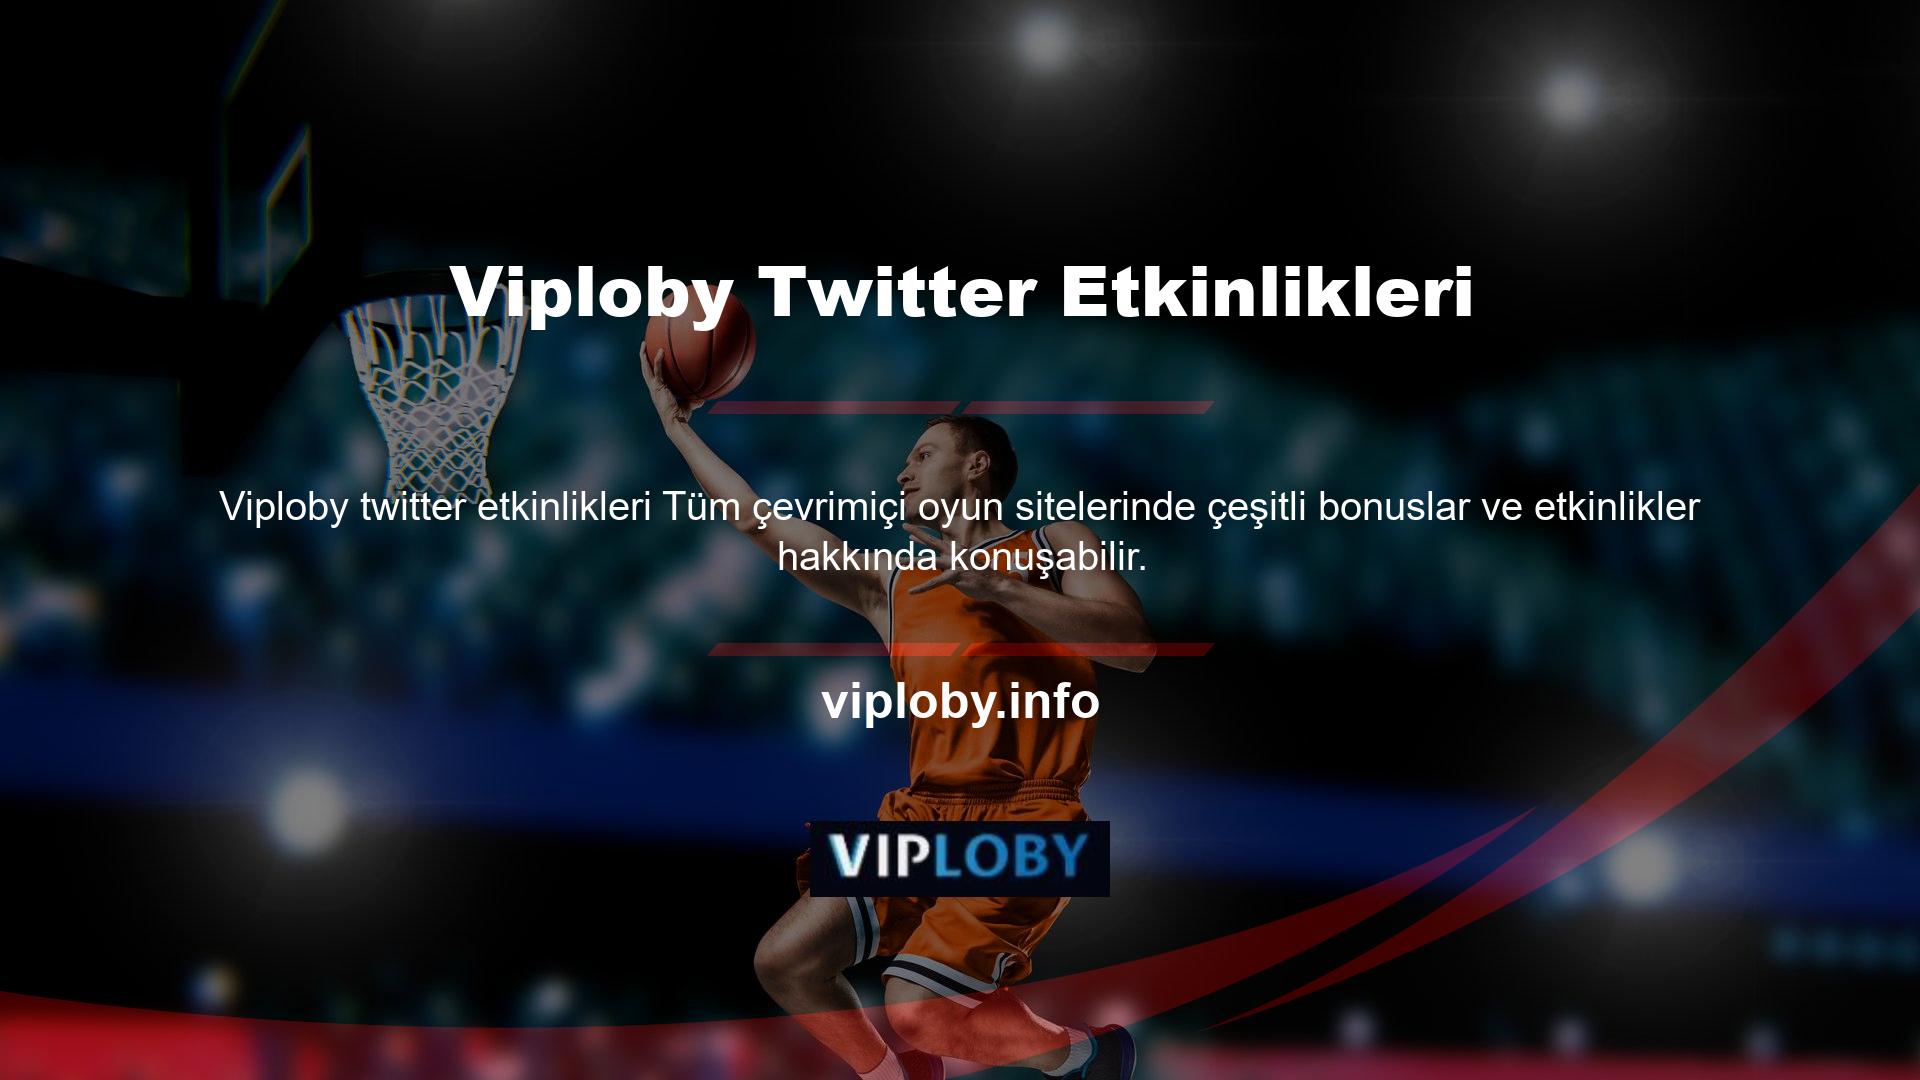 Viploby Twitter adresini takip eden oyun tutkunları için özel bir Twitter etkinliği düzenleniyor